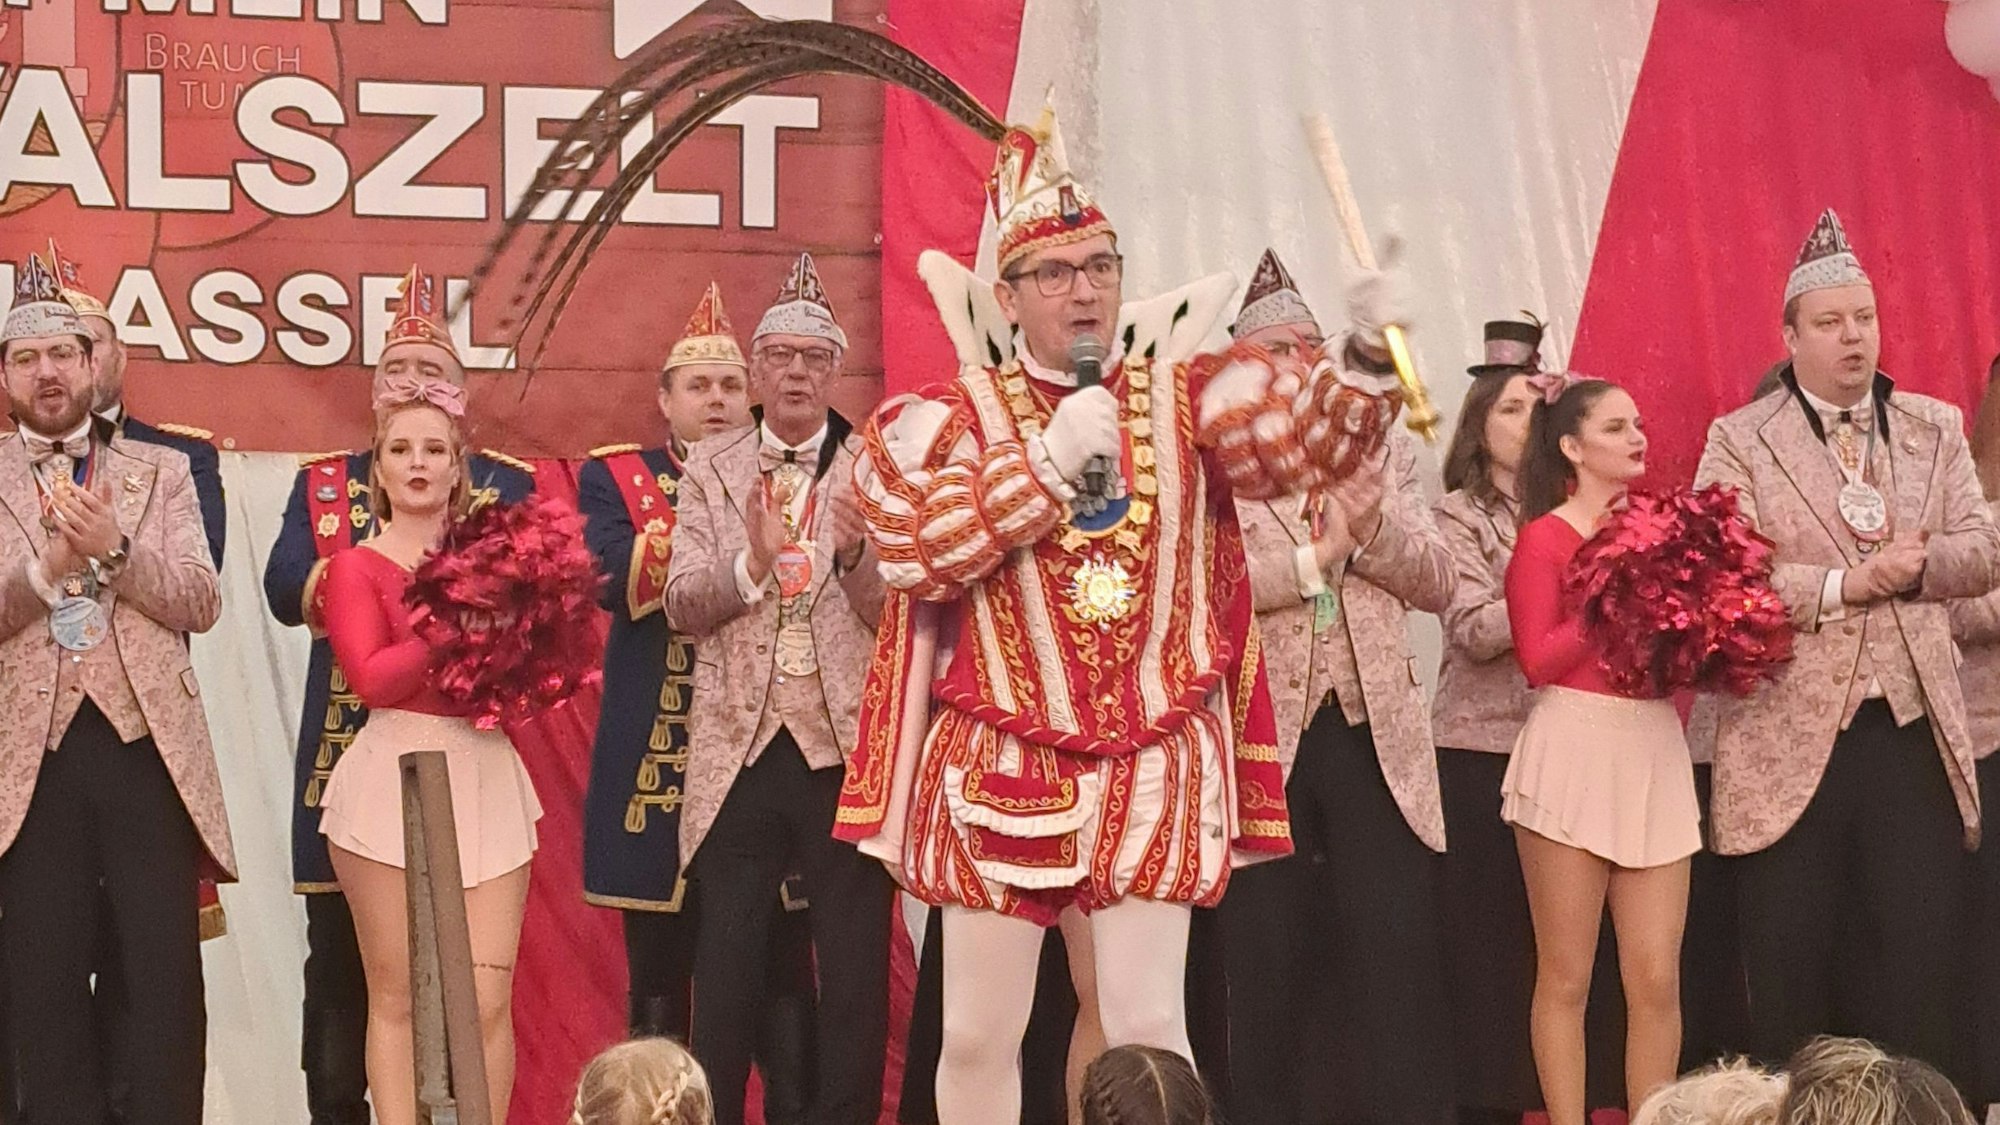 Markus I., Prinz in Niederkassel-Rheidt, singt im Festzelt auf dem Niederkasseler Rathausplatz im Prinzenornat seinen Sessionshit "Für et Dörp".